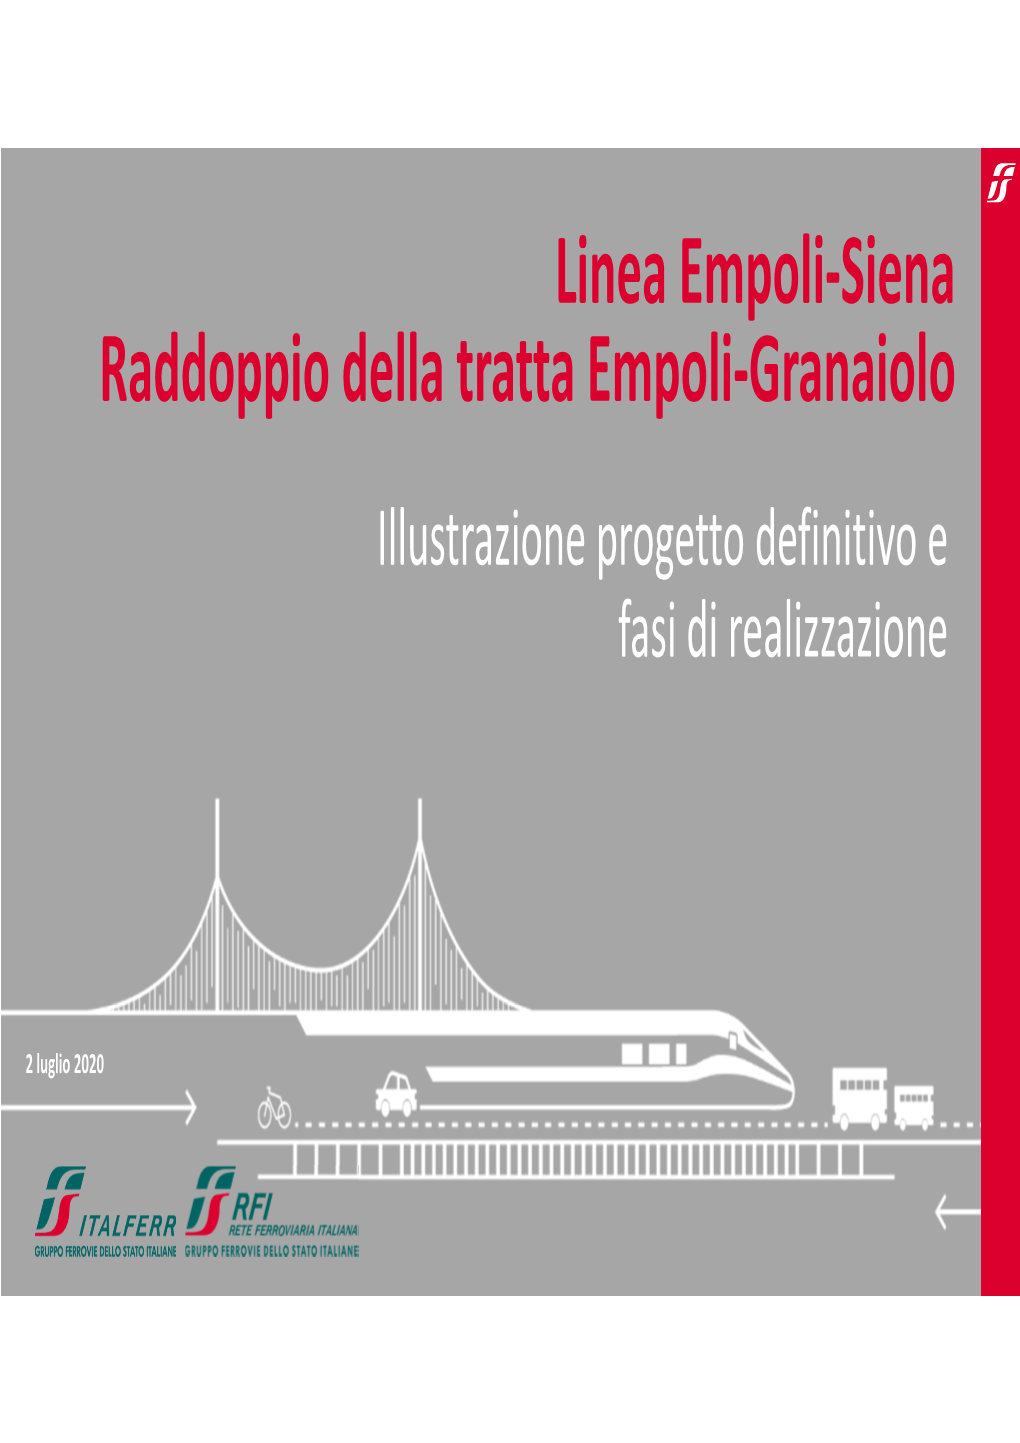 Linea Empoli-Siena Raddoppio Della Tratta Empoli-Granaiolo Illustrazione Progetto Definitivo E Fasi Di Realizzazione